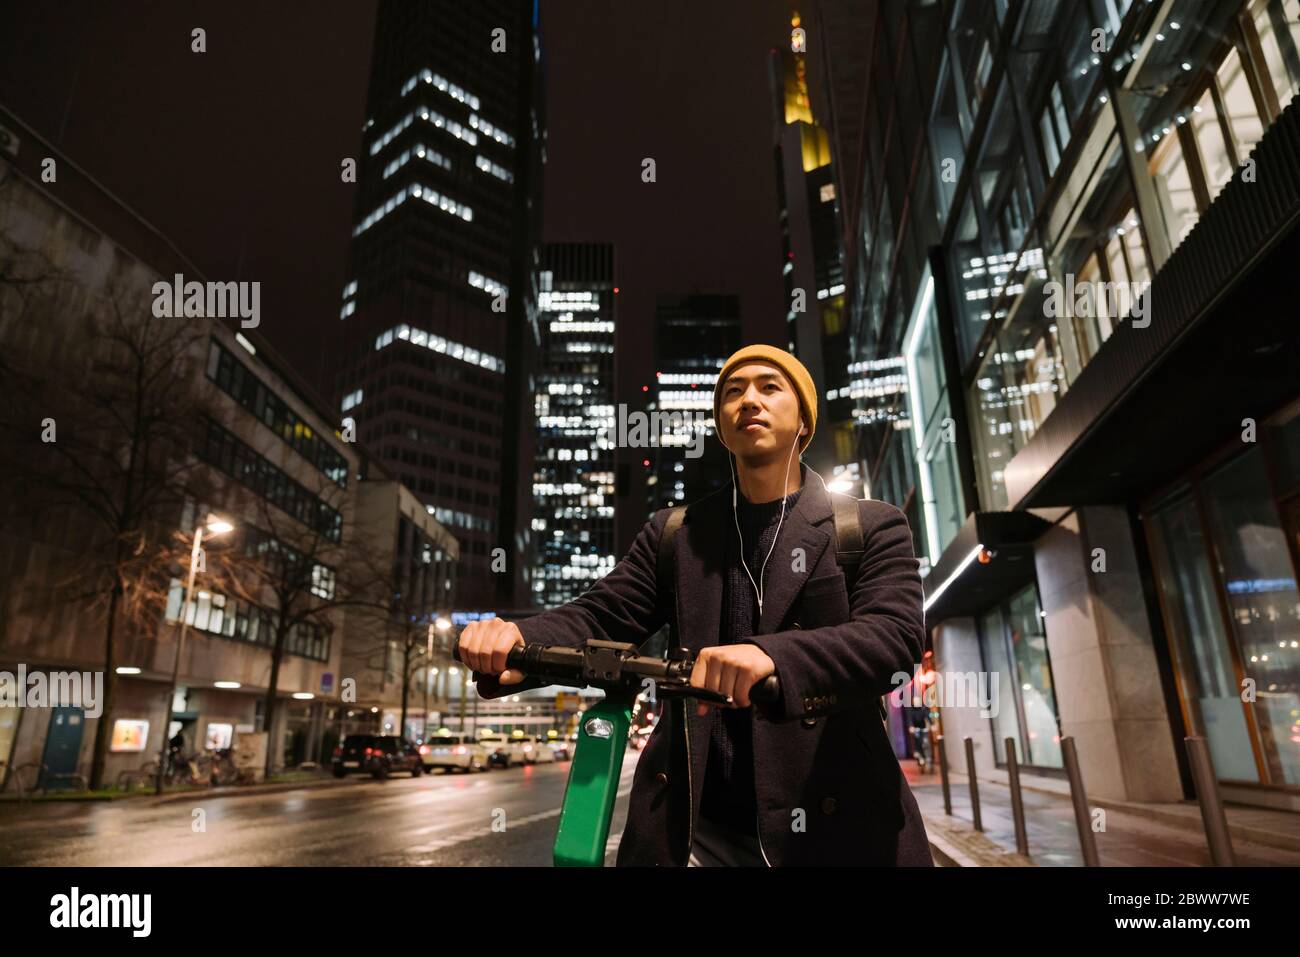 Uomo con cappello giallo e auricolari che usano scooter in città di notte Foto Stock